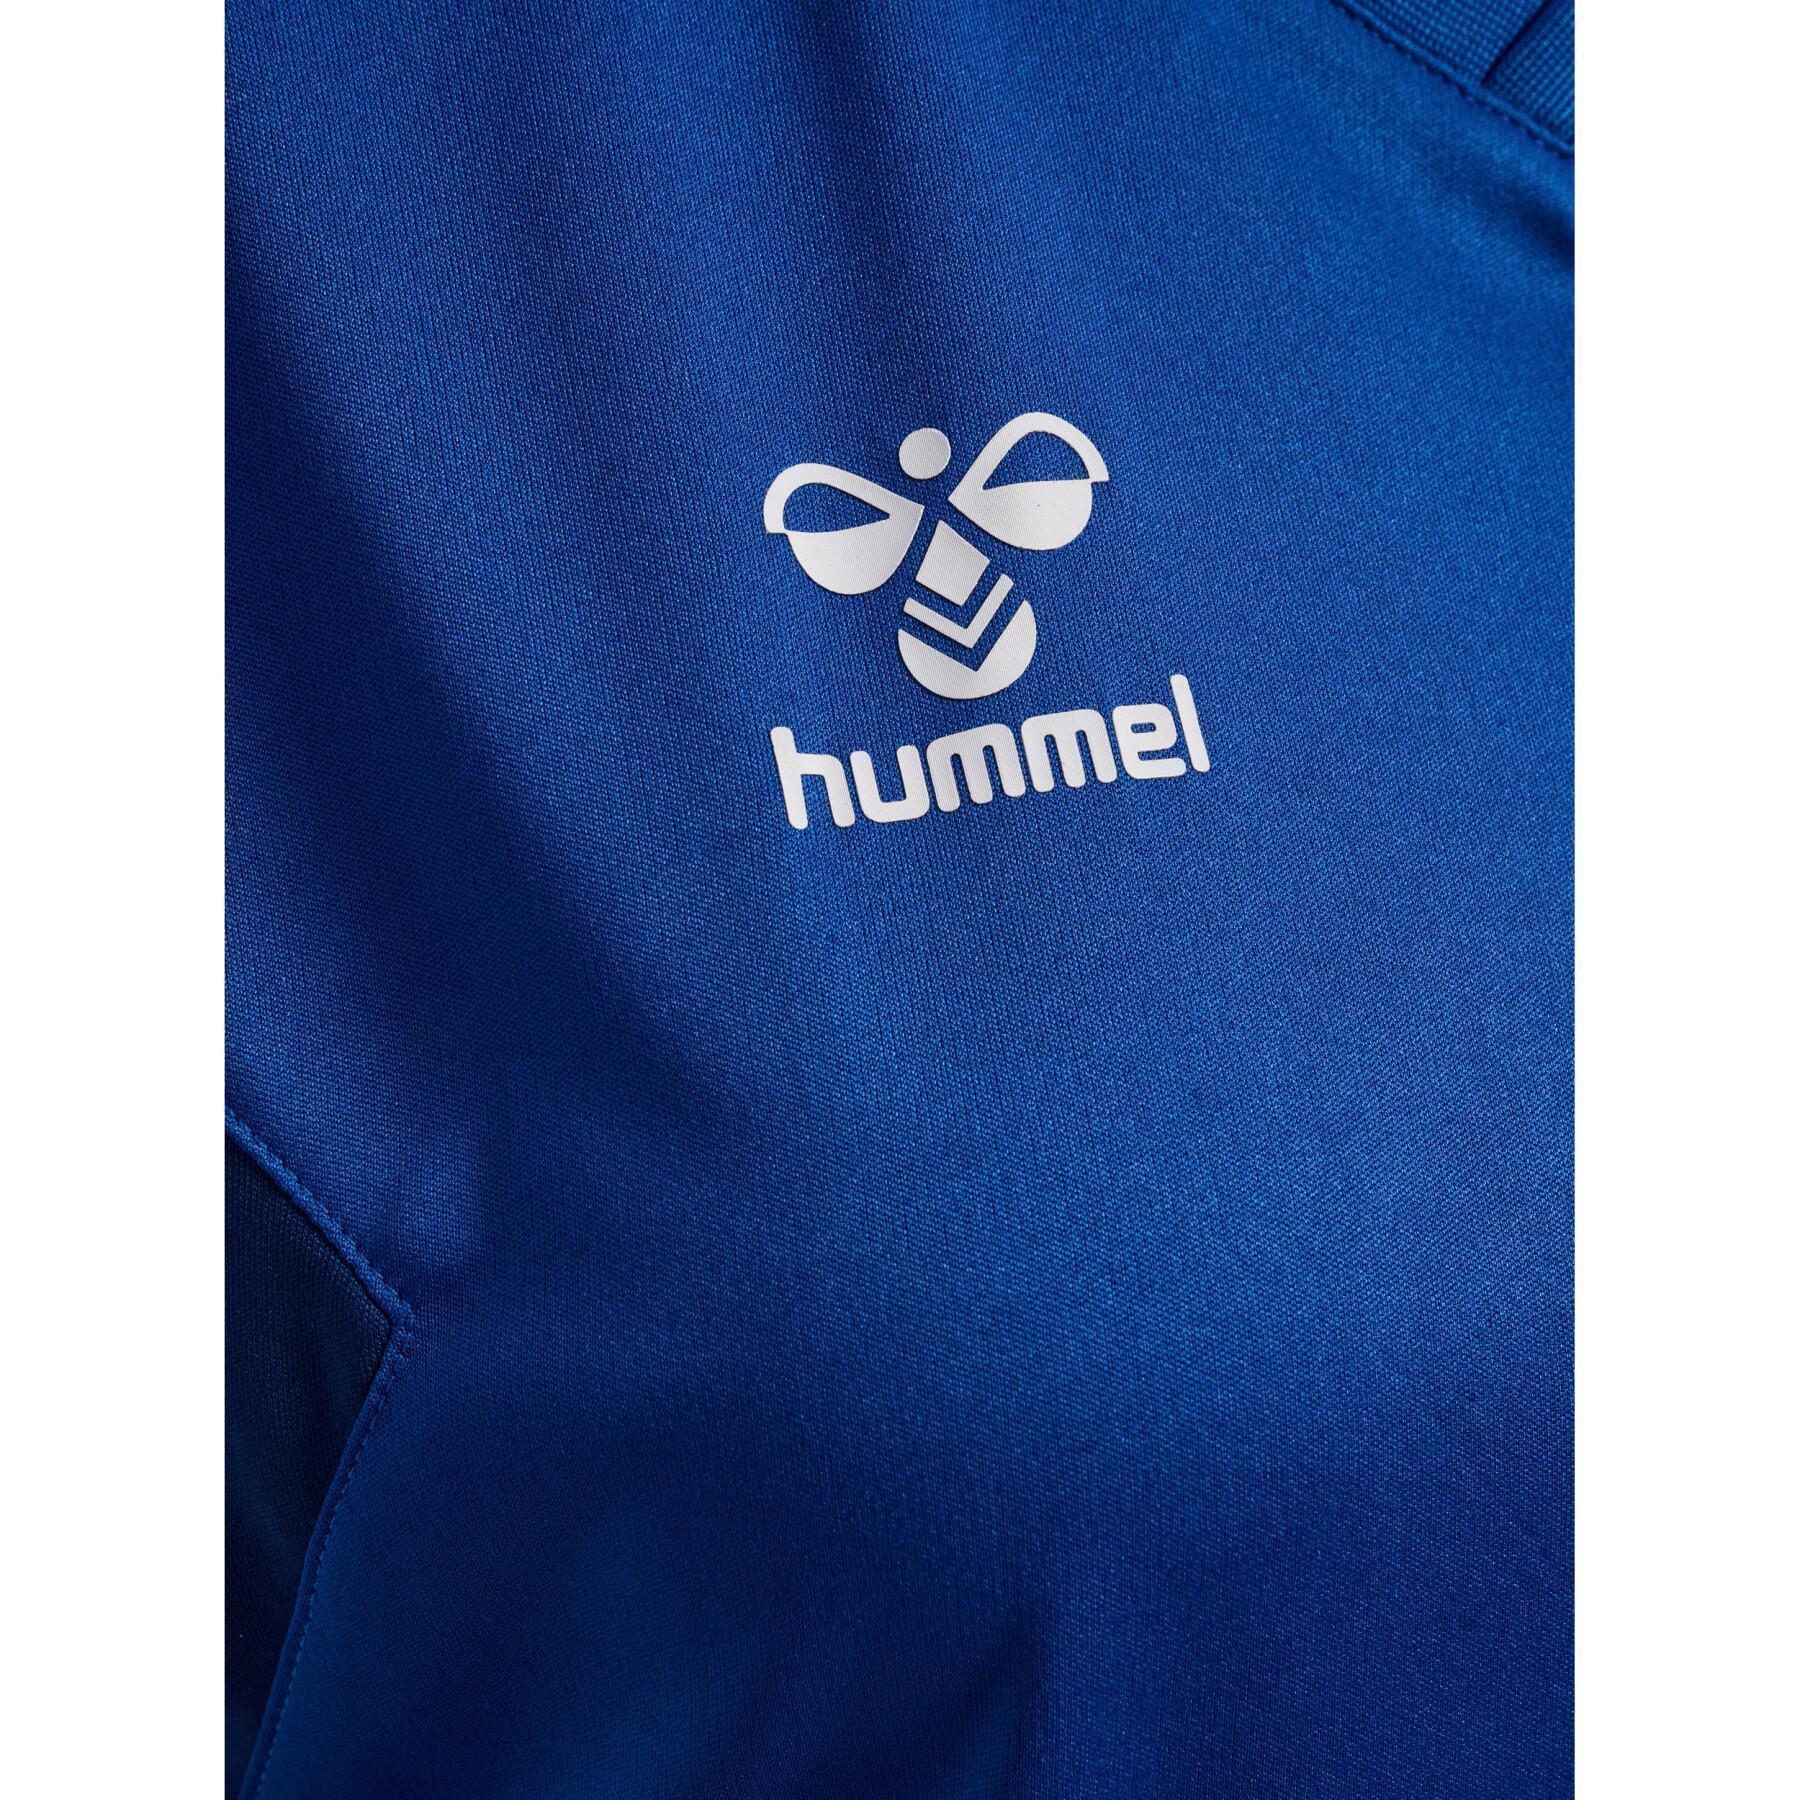 Camiseta de mujer Hummel Authentic Pl